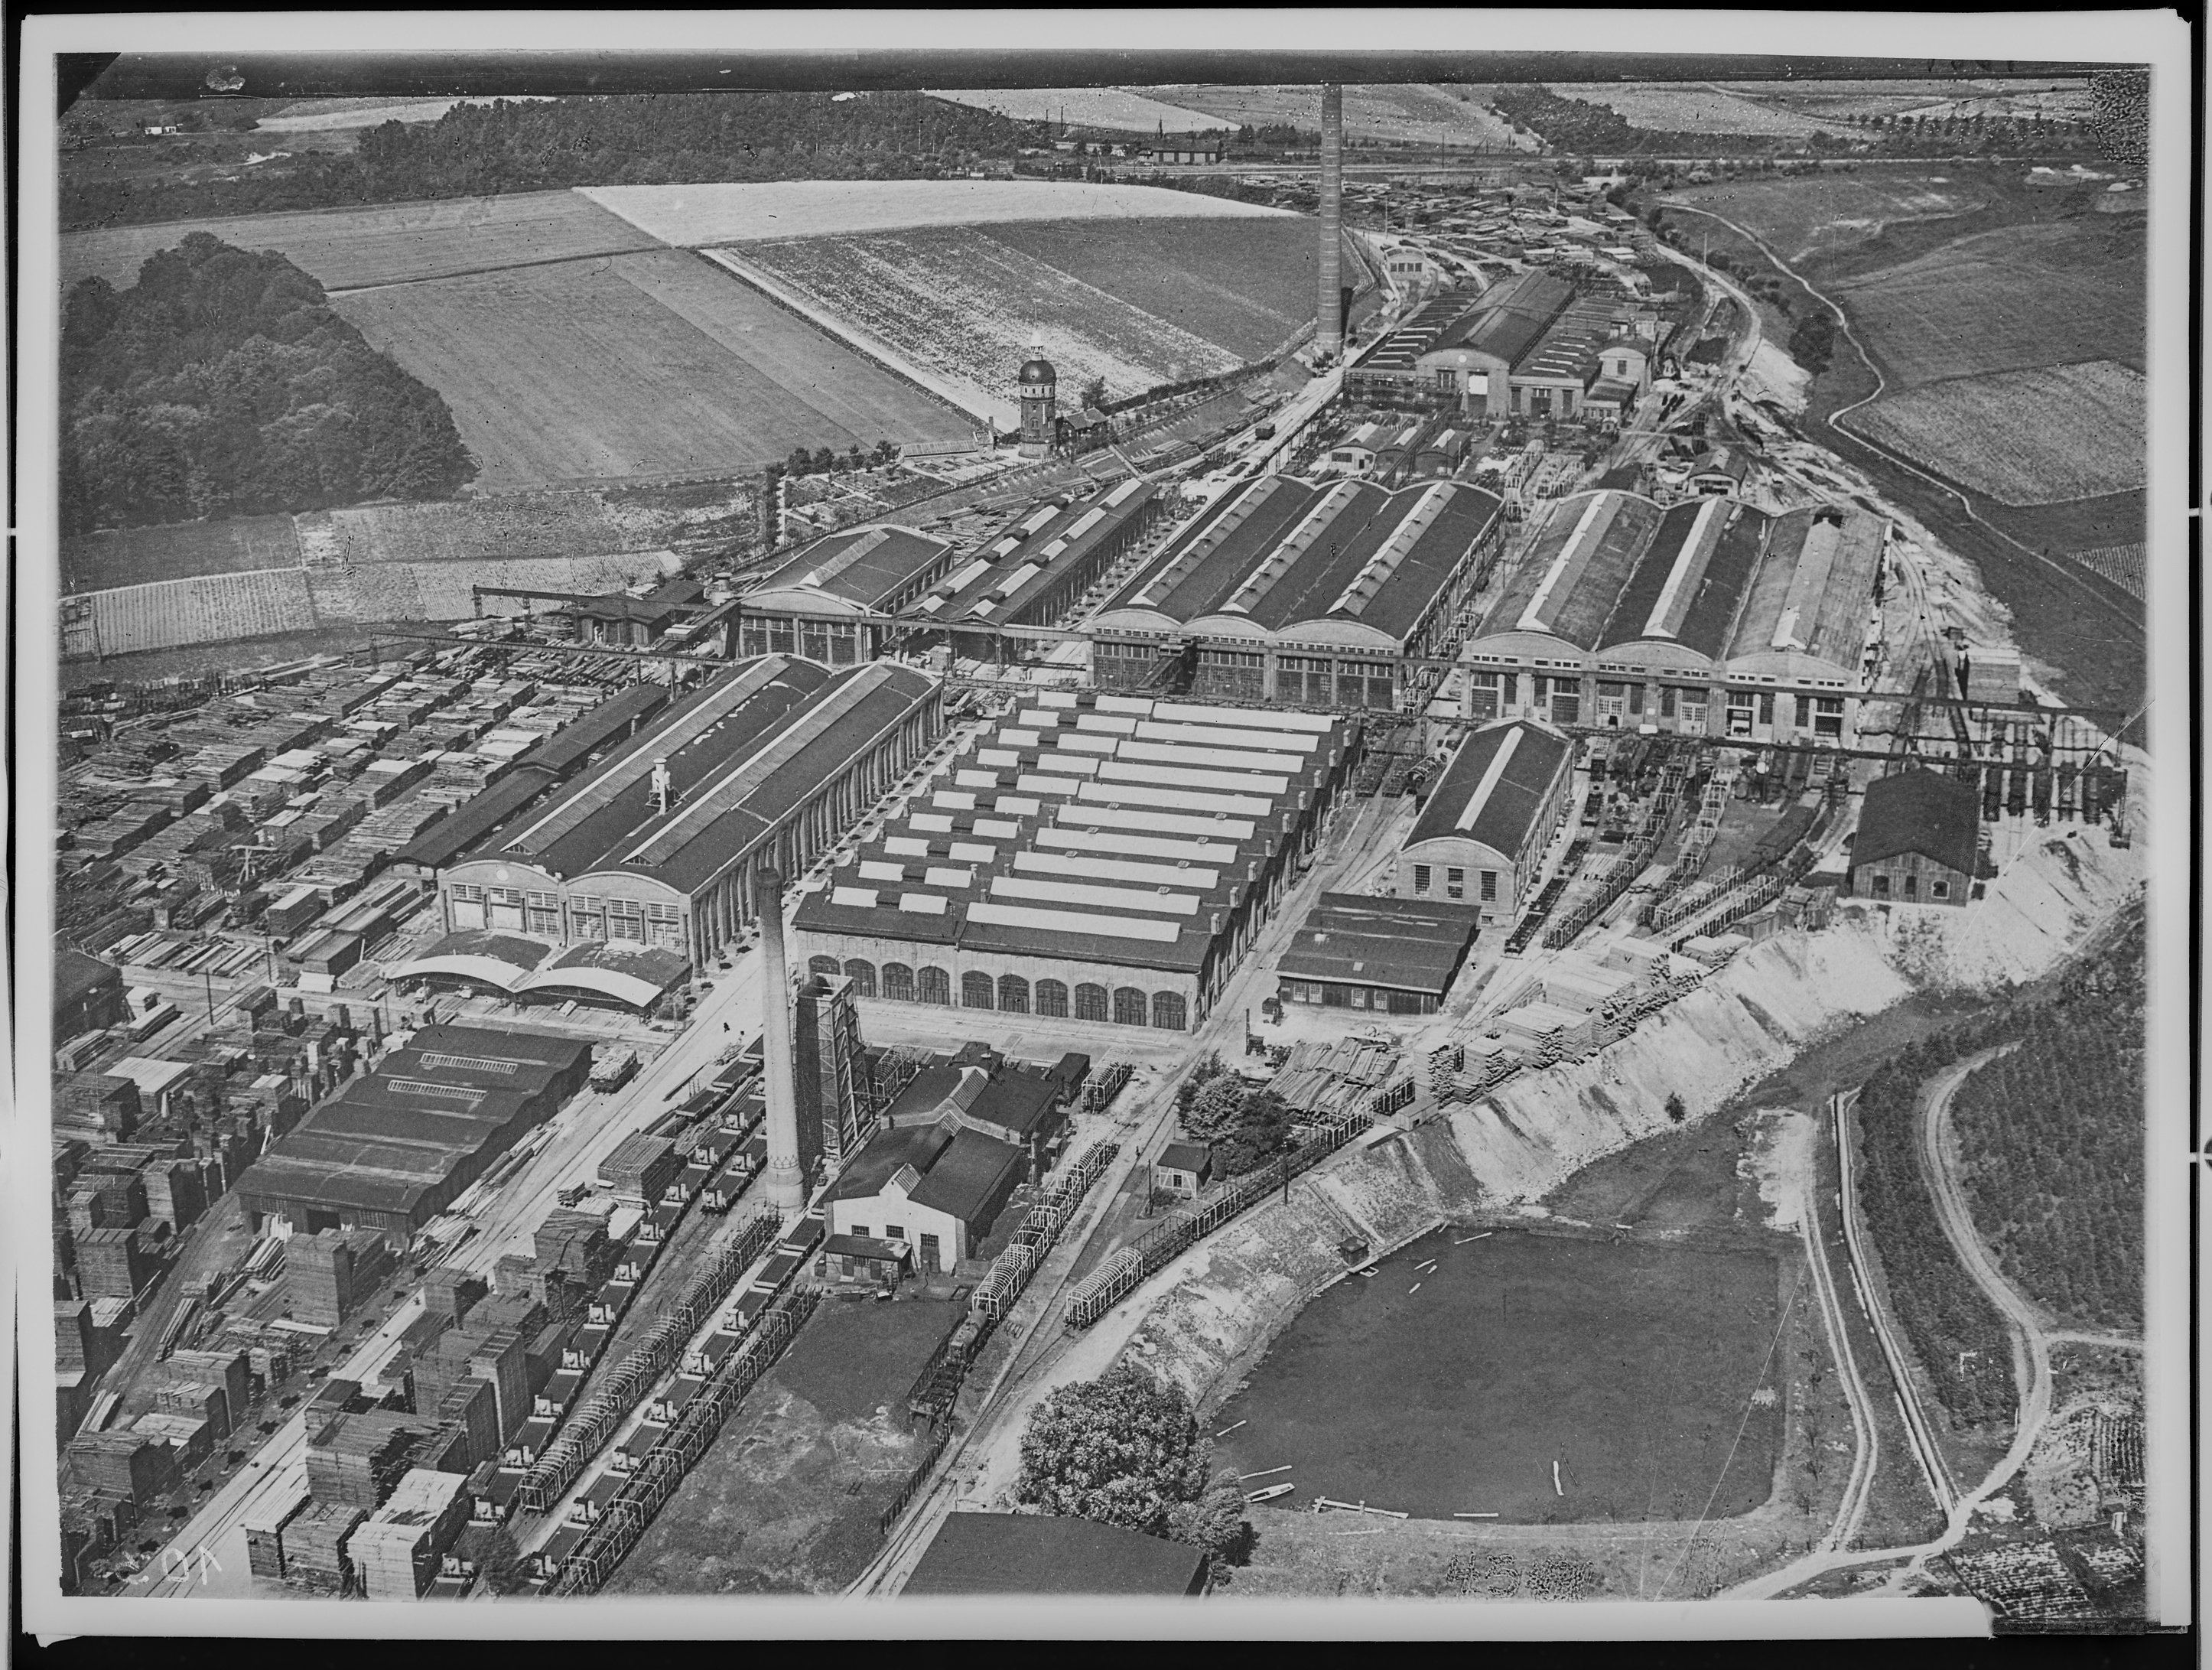 Fotografie: Werksgelände (Luftaufnahme) der Waggon- und Maschinenbau AG Görlitz (WUMAG), um 1925? (Verkehrsmuseum Dresden CC BY-NC-SA)